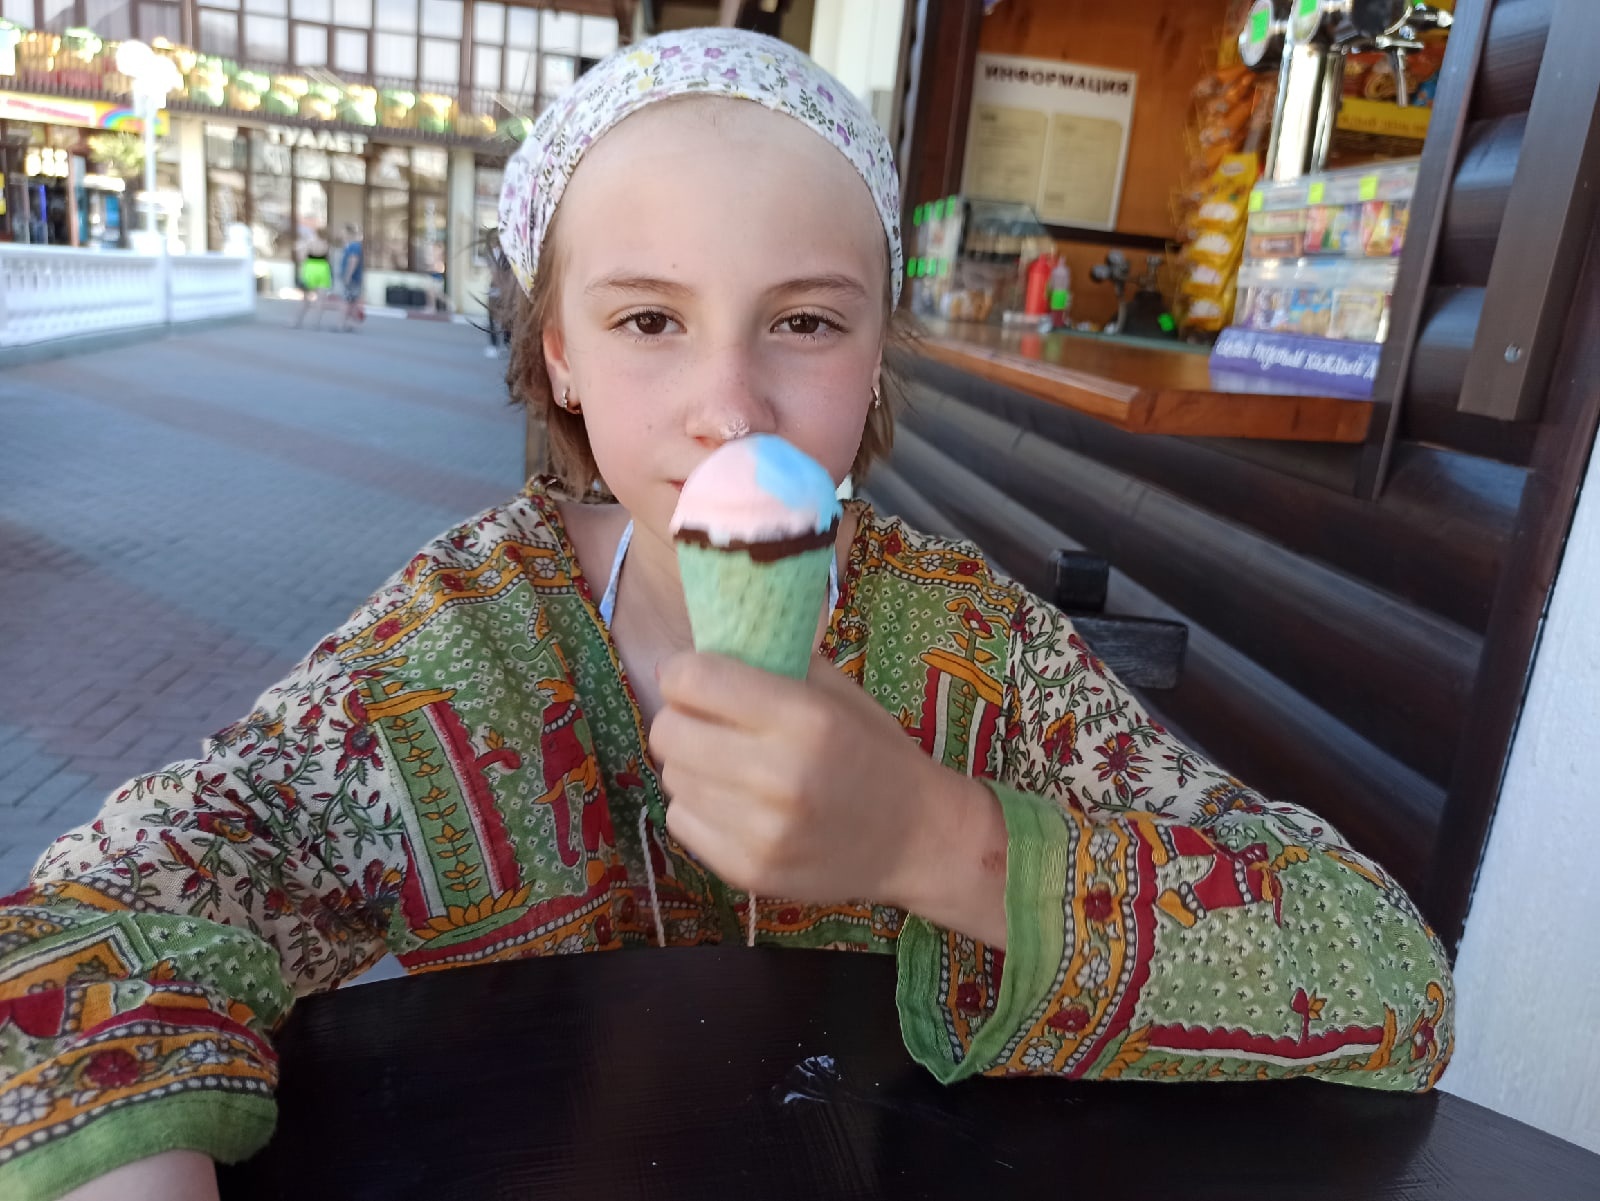  Болит горло - ешьте мороженое: врач из Ярославля о лечении гриппа и ОРВИ